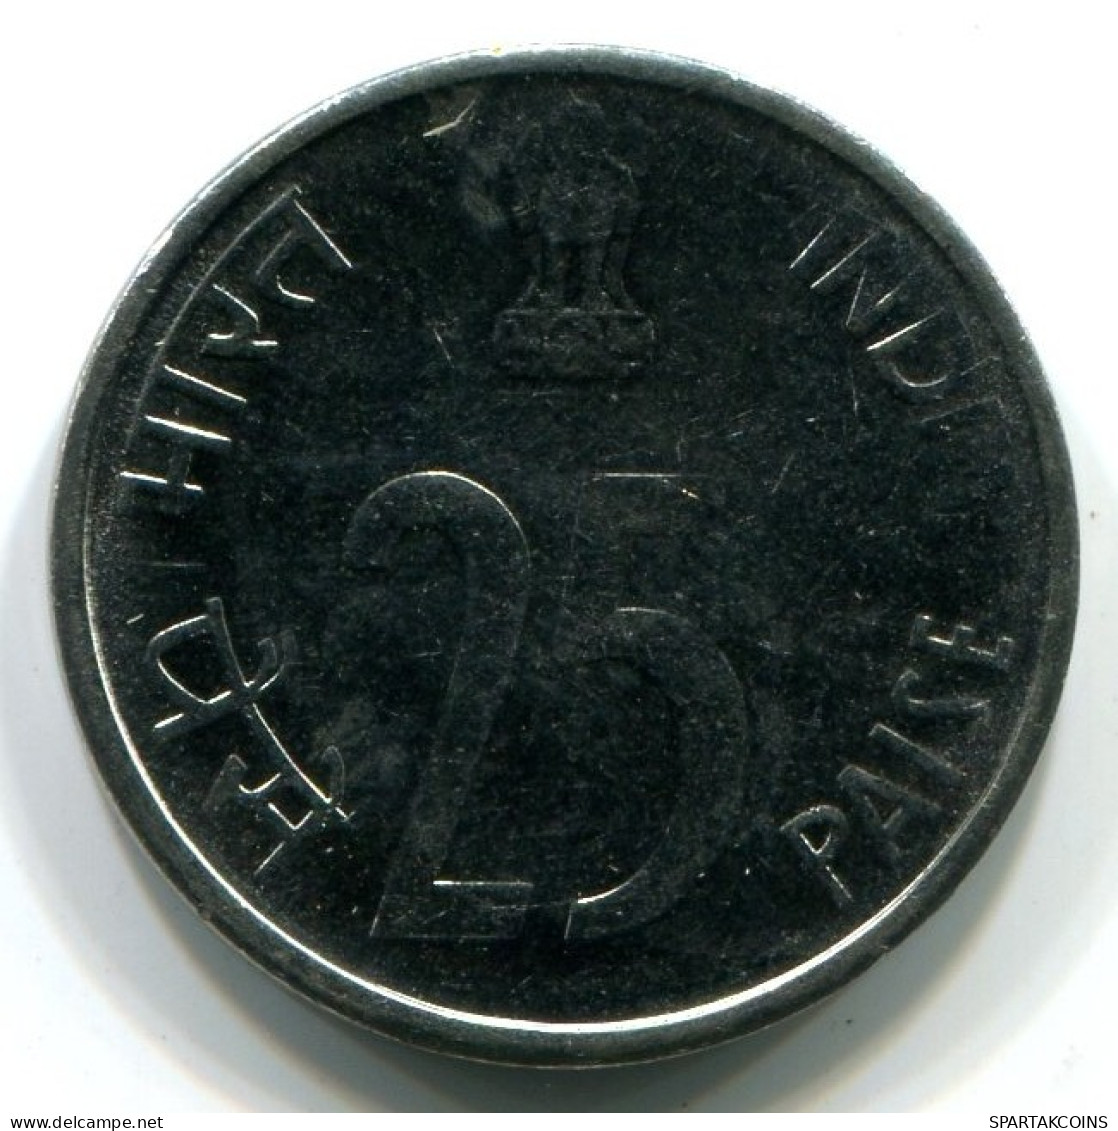 25 PAISE 1999 INDIEN INDIA UNC Münze #W11473.D.A - Indien